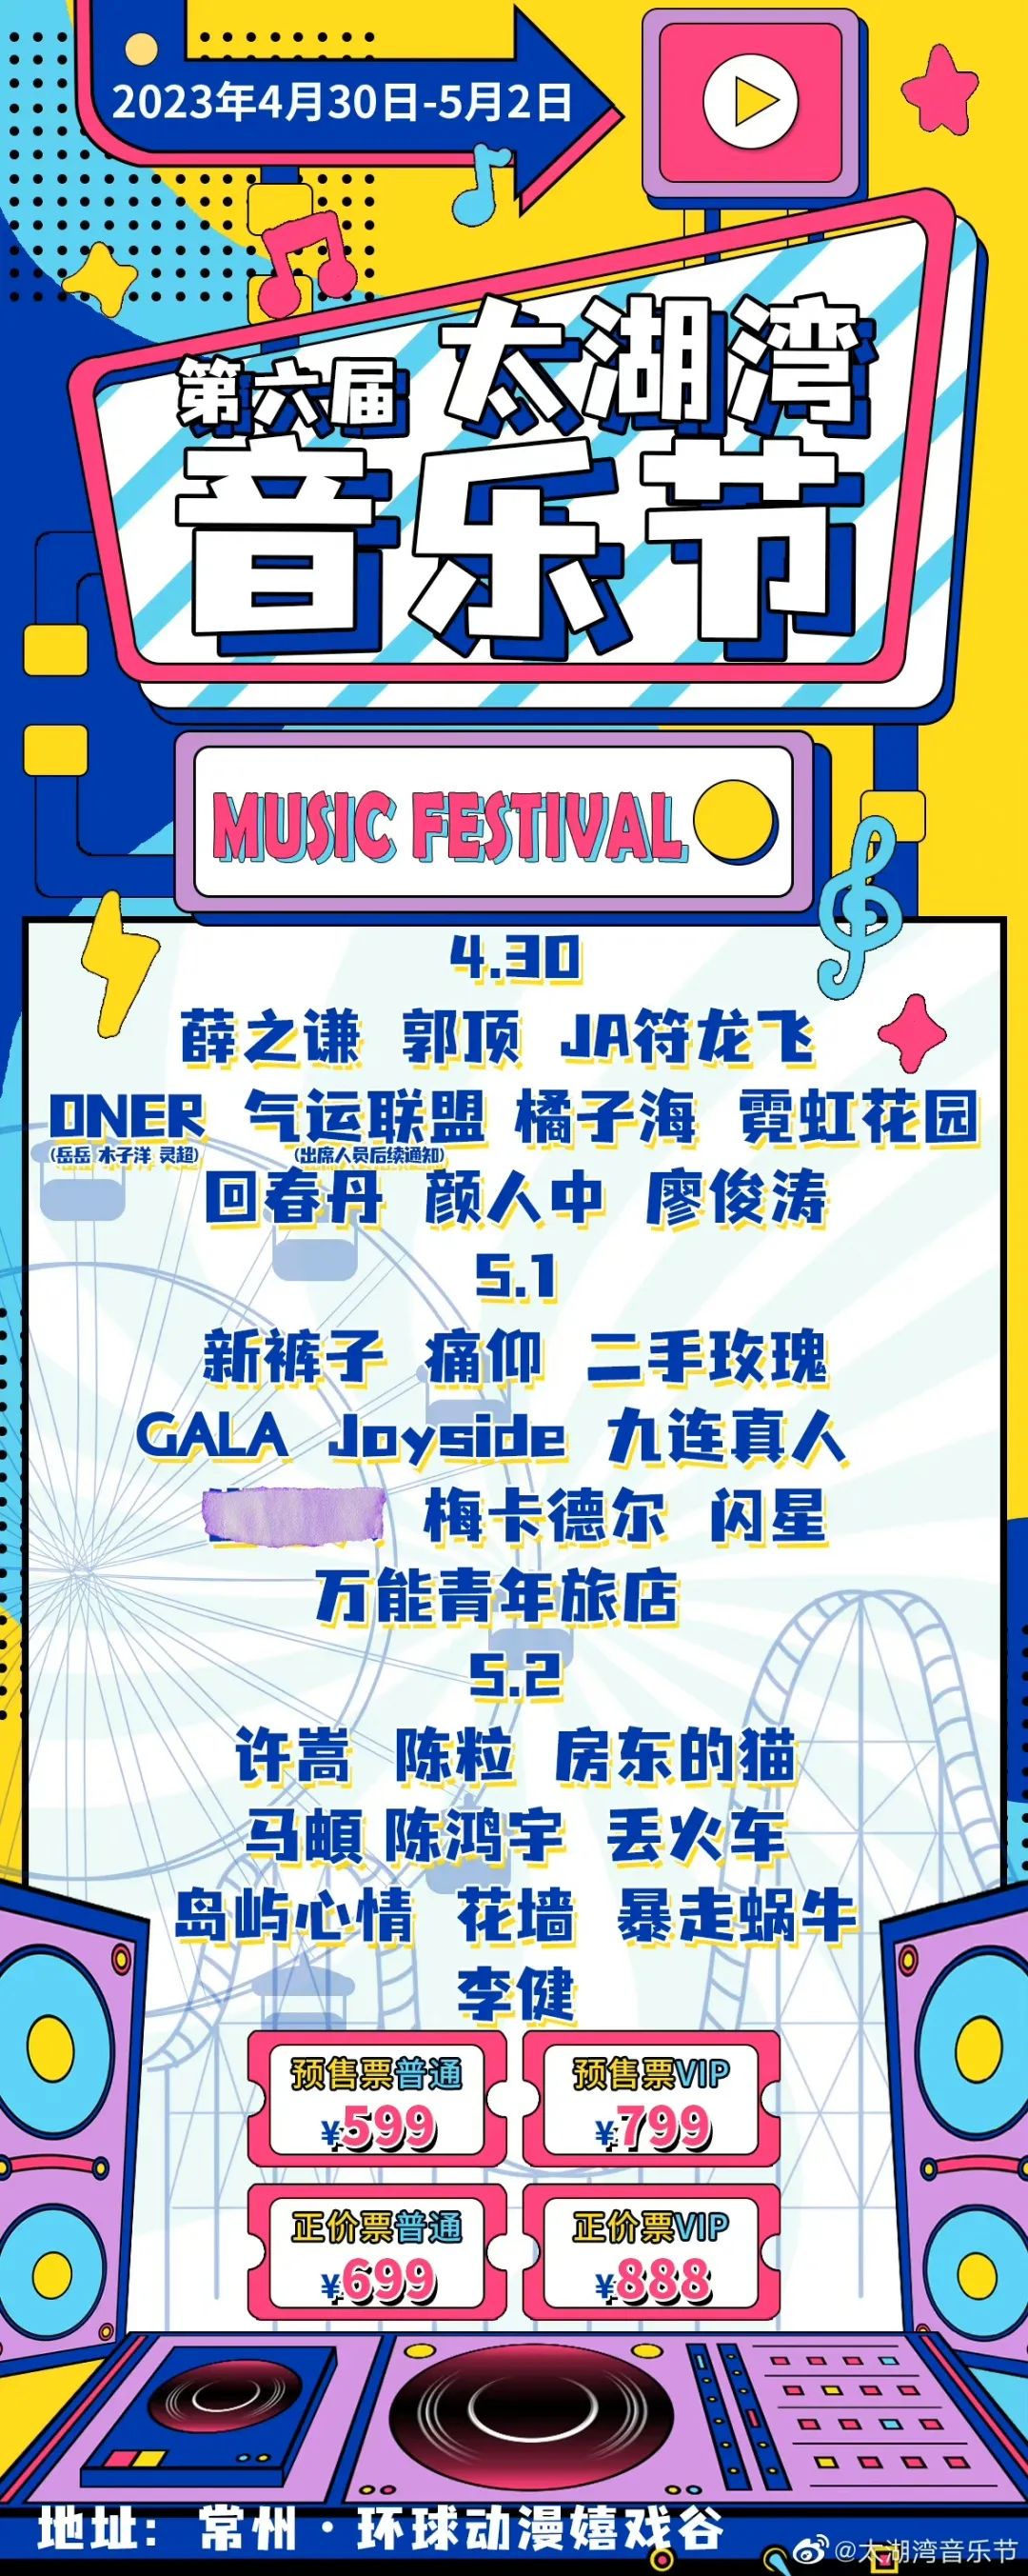 上海音乐节,上海音乐节海报 - 伤感说说吧